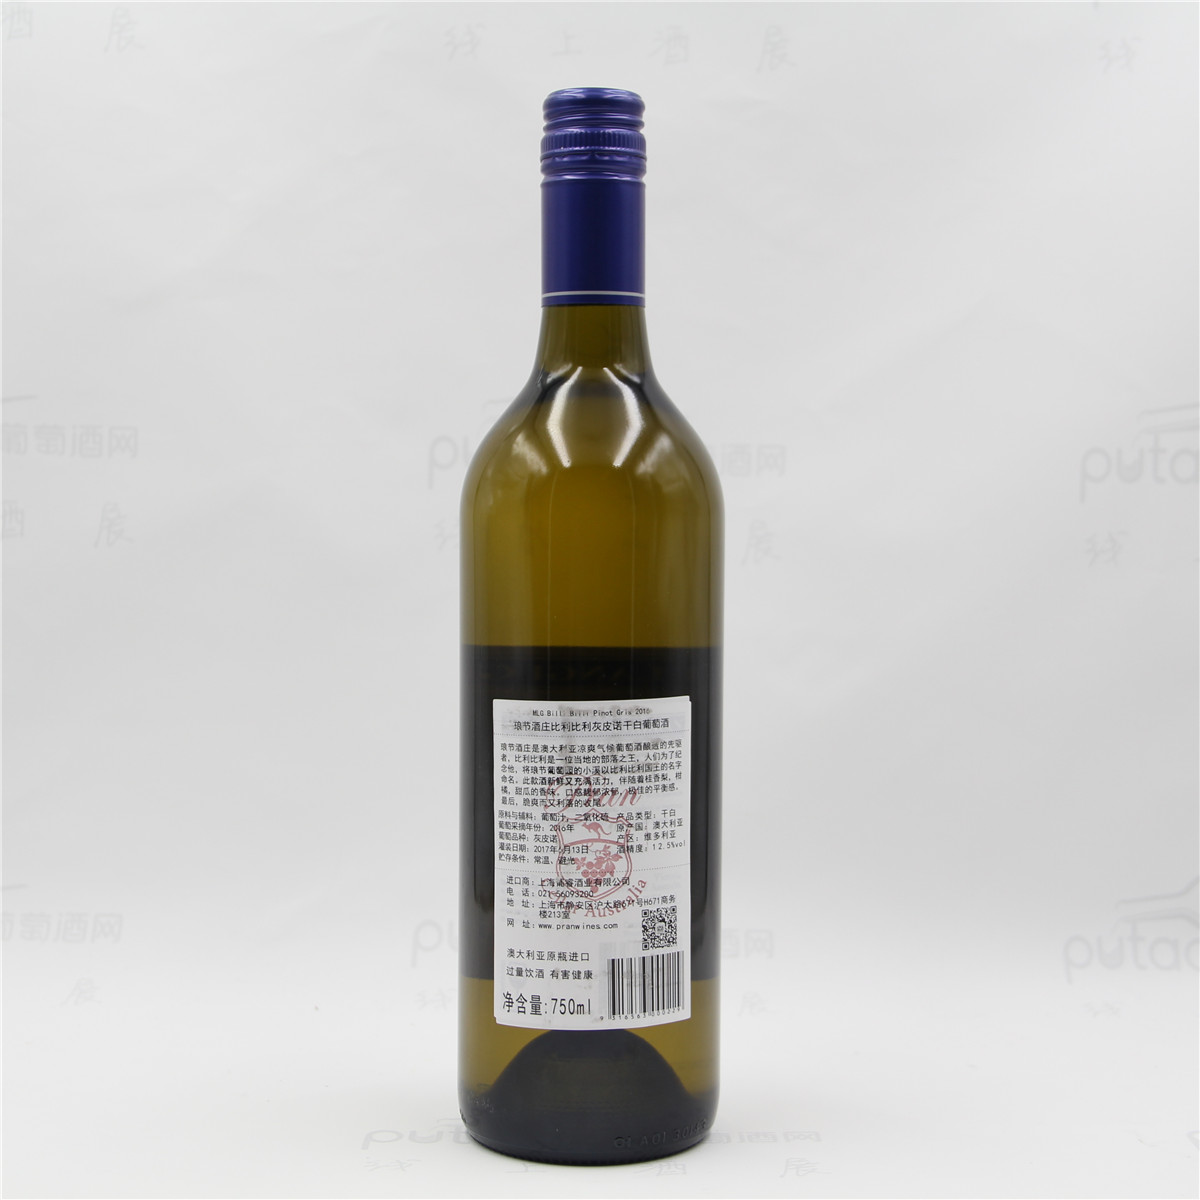 澳大利亚格兰屏产区朗节酒庄比利比利灰皮诺双红五星酒庄干白葡萄酒 2016